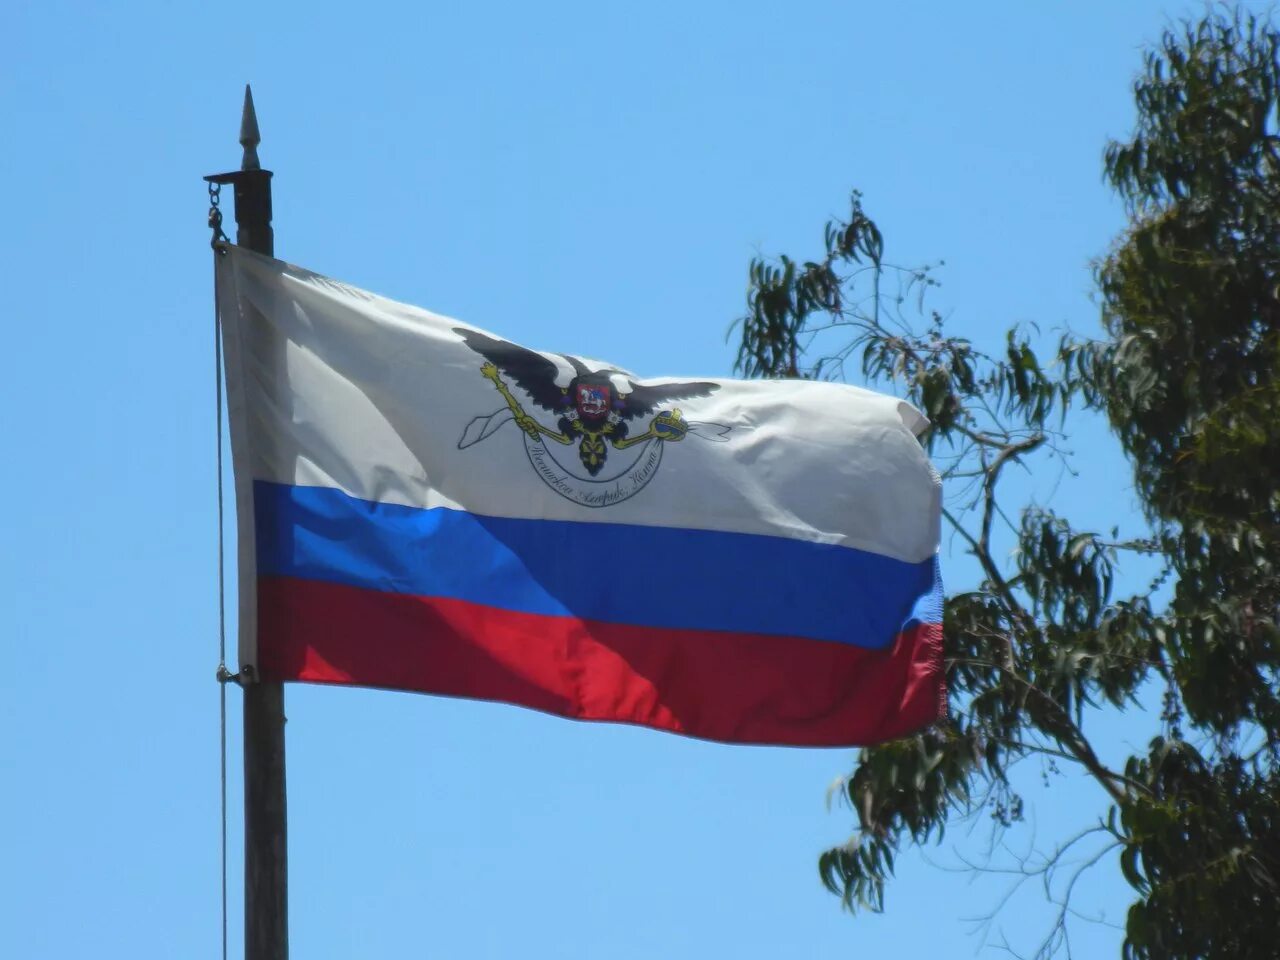 Колония аляска. Форт Росс флаг. Аляска русская Америка российско американская компания. Флаг российско-американской компании 1806 год. Форт Росс США.